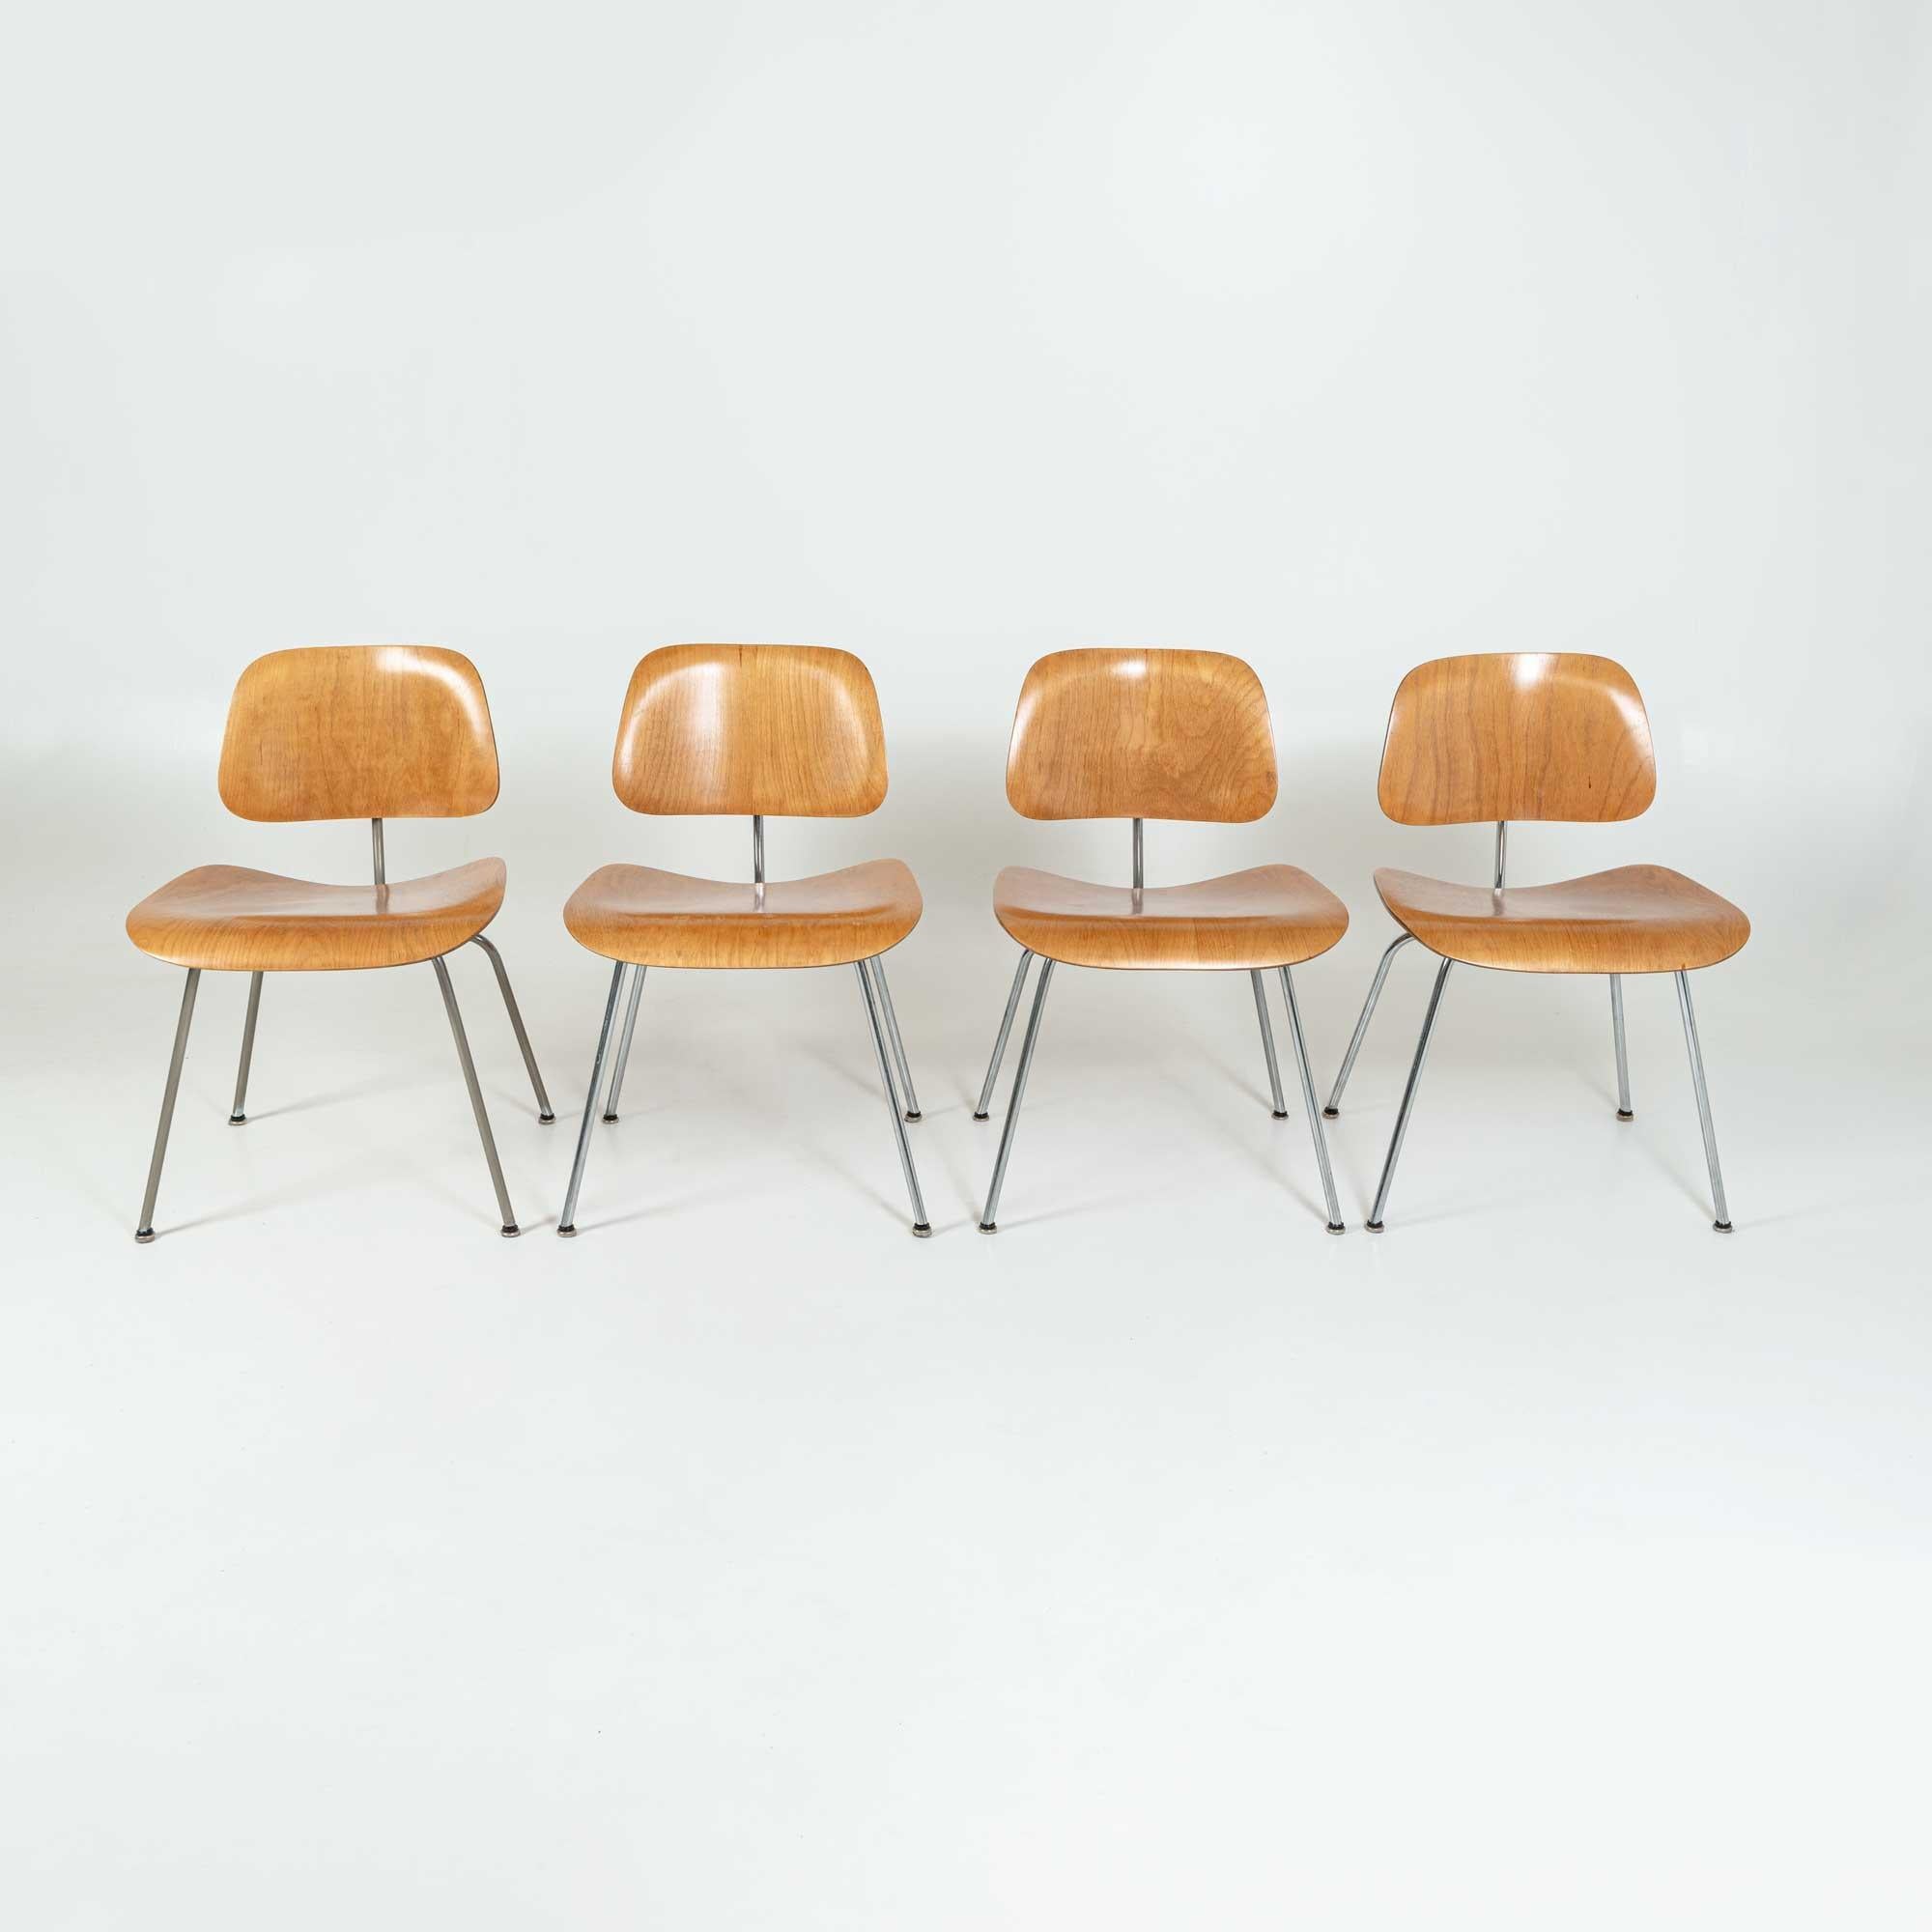 Vier frühe DCM-Stühle, entworfen von Charles & Ray Eames für Evans, vertrieben von Herman Miller. Die Labels sind auf allen vier Stühlen intakt. Die Stoßdämpfer wurden ersetzt, und die Stühle wurden zuvor neu lackiert.
Insgesamt sind sie alle in